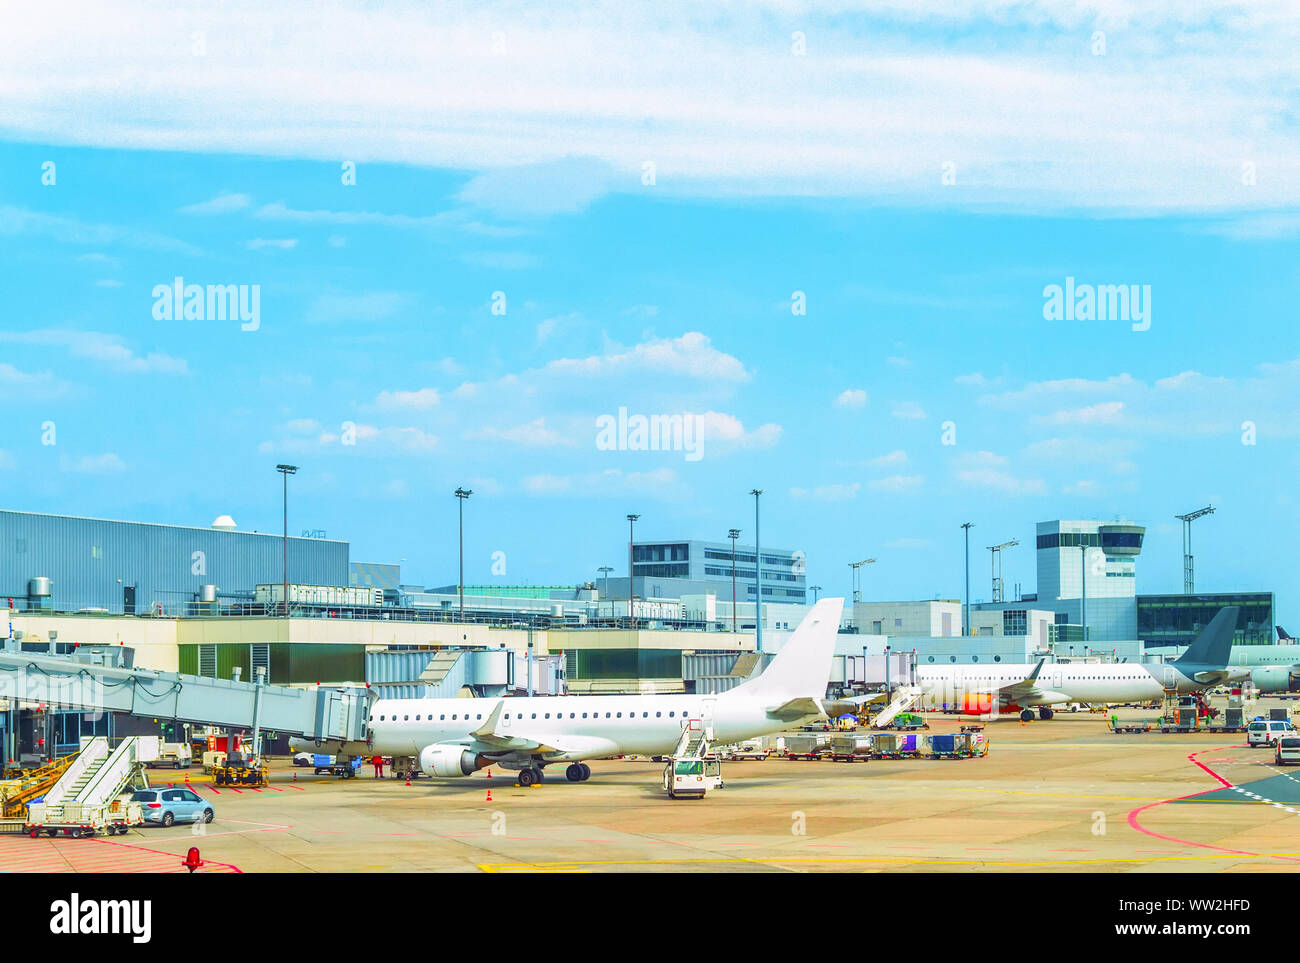 Vista del aeropuerto de Frankfurt, aviones, coches de servicio, pasarelas, Alemania Foto de stock